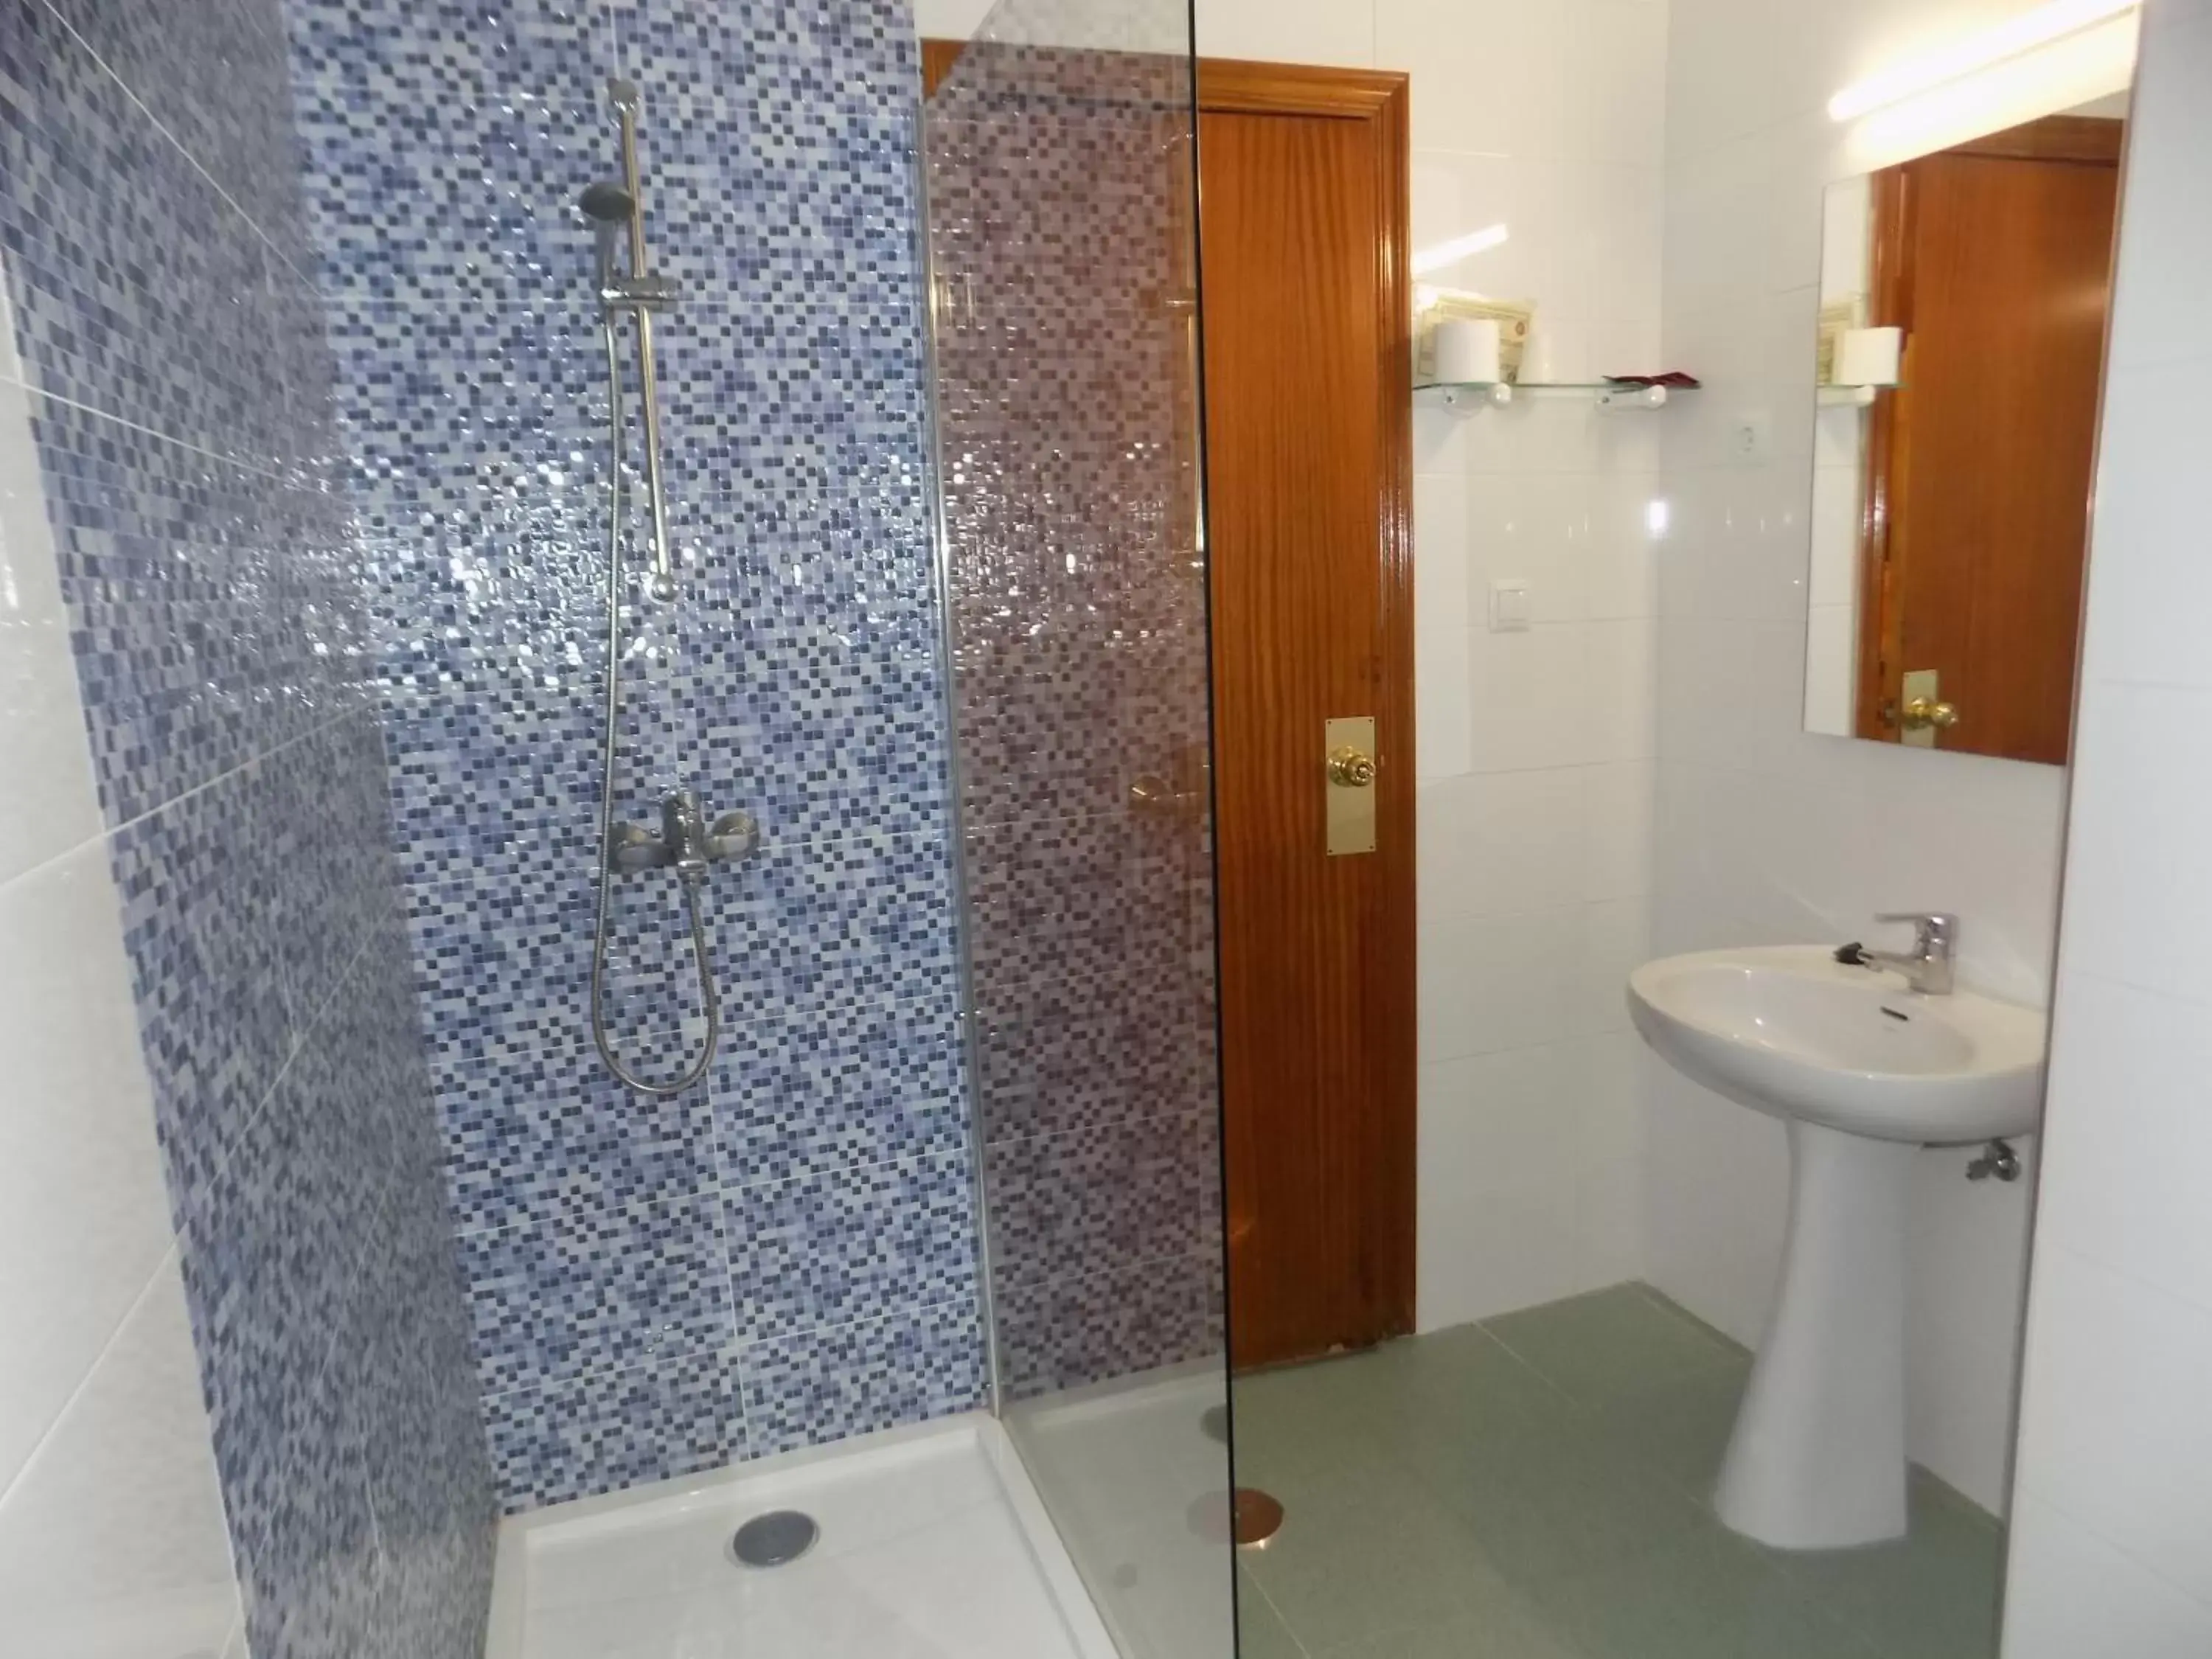 Bathroom in Hotel La Barca